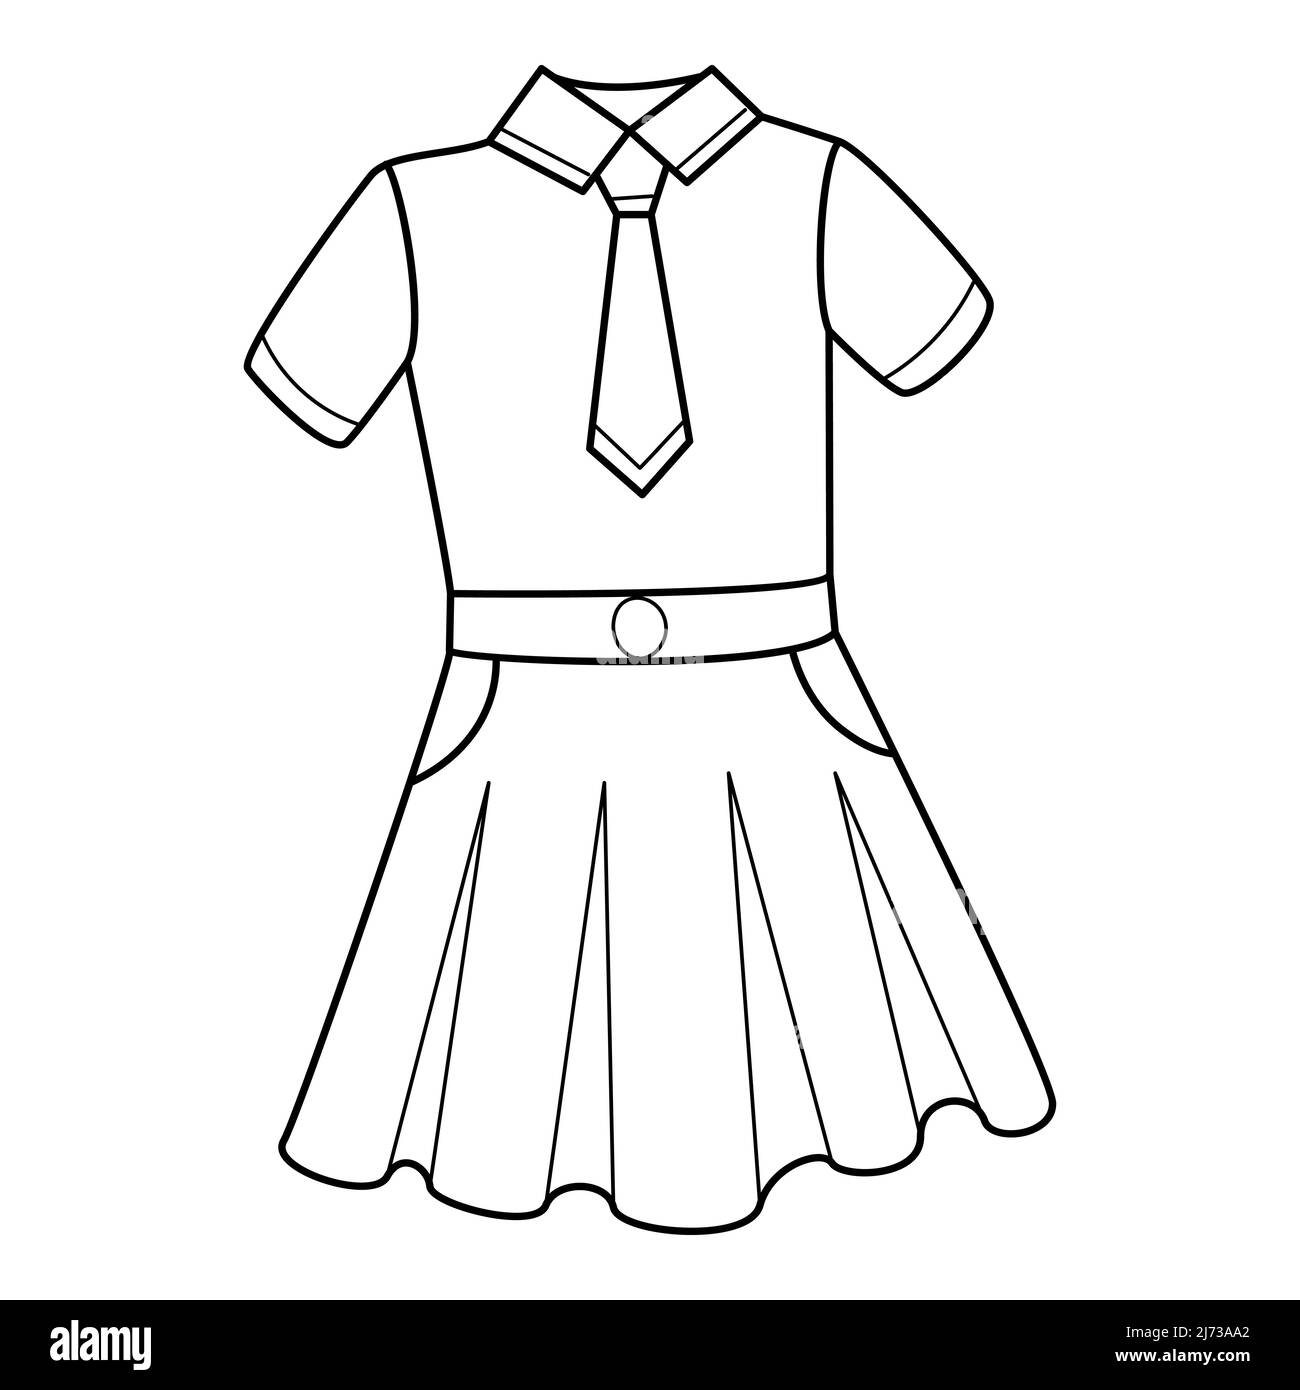 Uniformi scolastiche ragazze. Una blusa con cravatta e gonna. Vestiti. Doodle. Illustrazione vettoriale in bianco e nero disegnata a mano. Gli elementi di progettazione sono iso Illustrazione Vettoriale